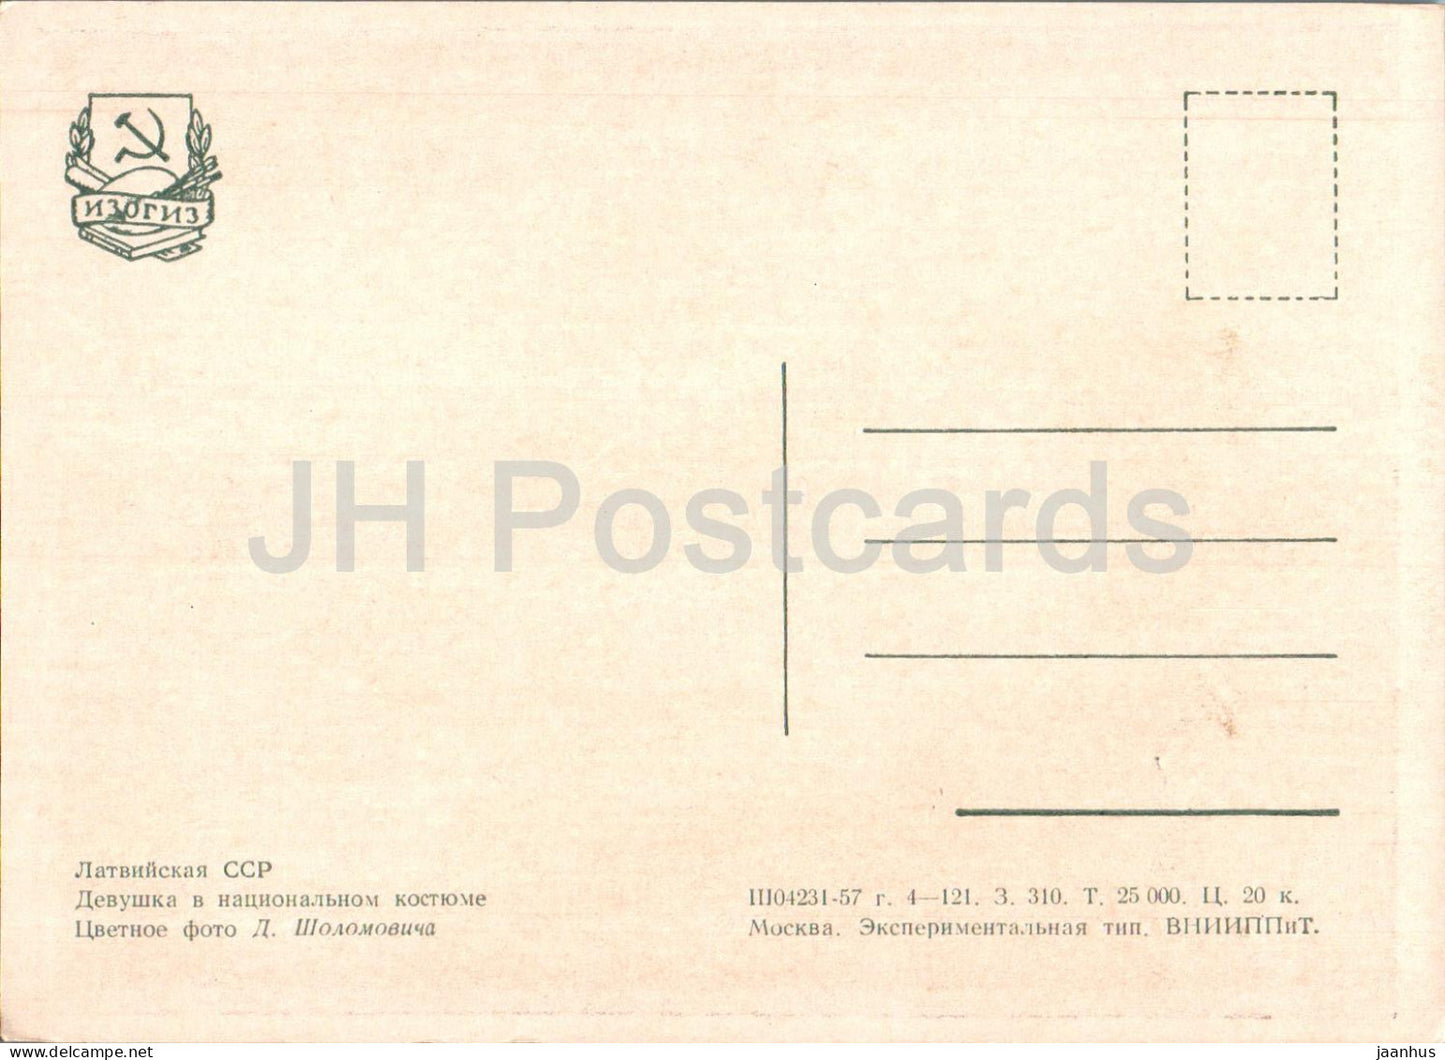 junge Frau in lettischer Tracht – alte Postkarte – 1957 – Lettland UdSSR – unbenutzt 